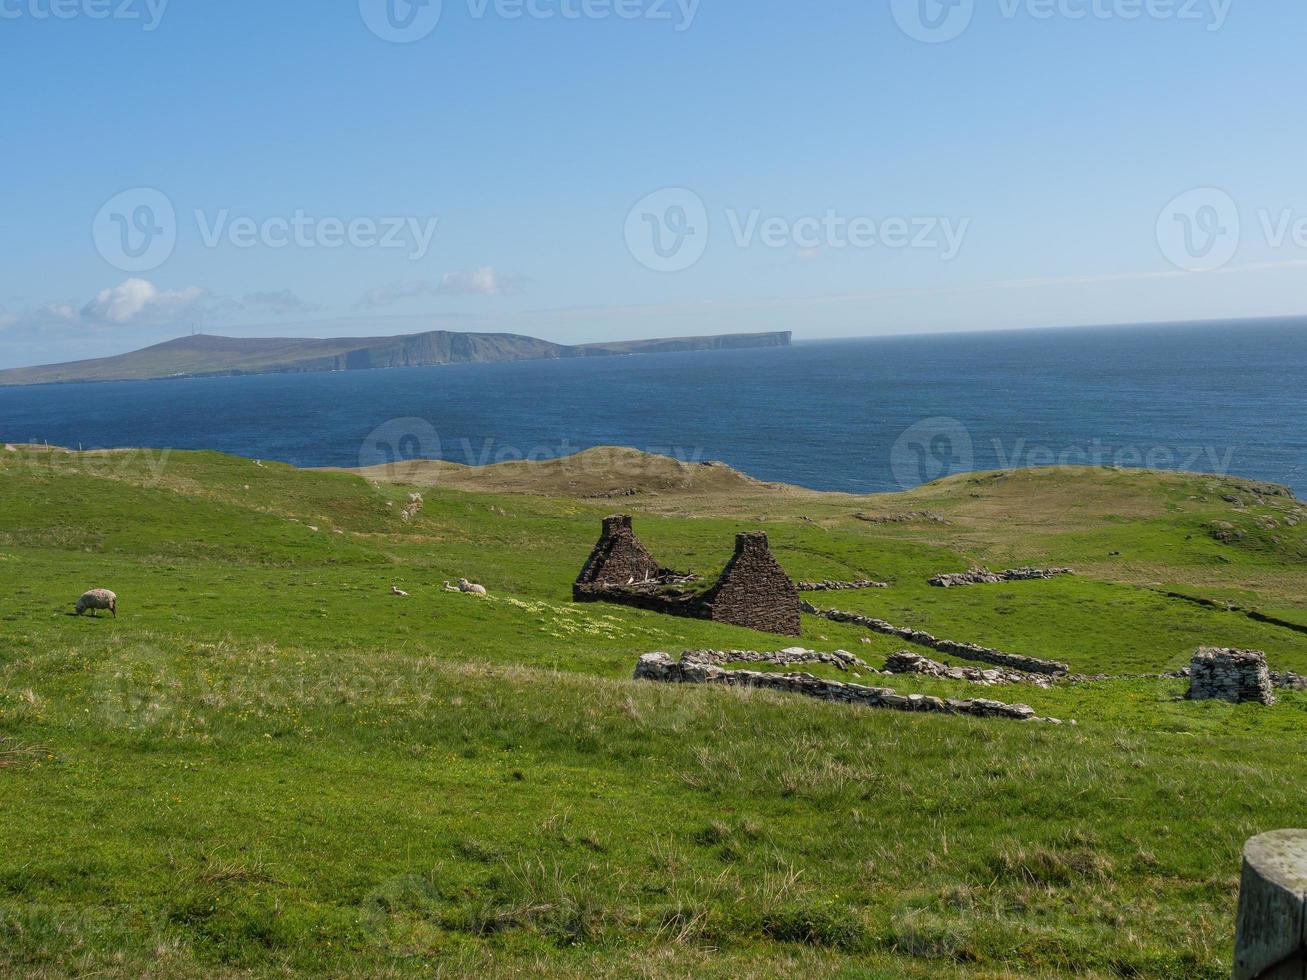 die shetlandinseln mit der stadt lerwick in schottland foto